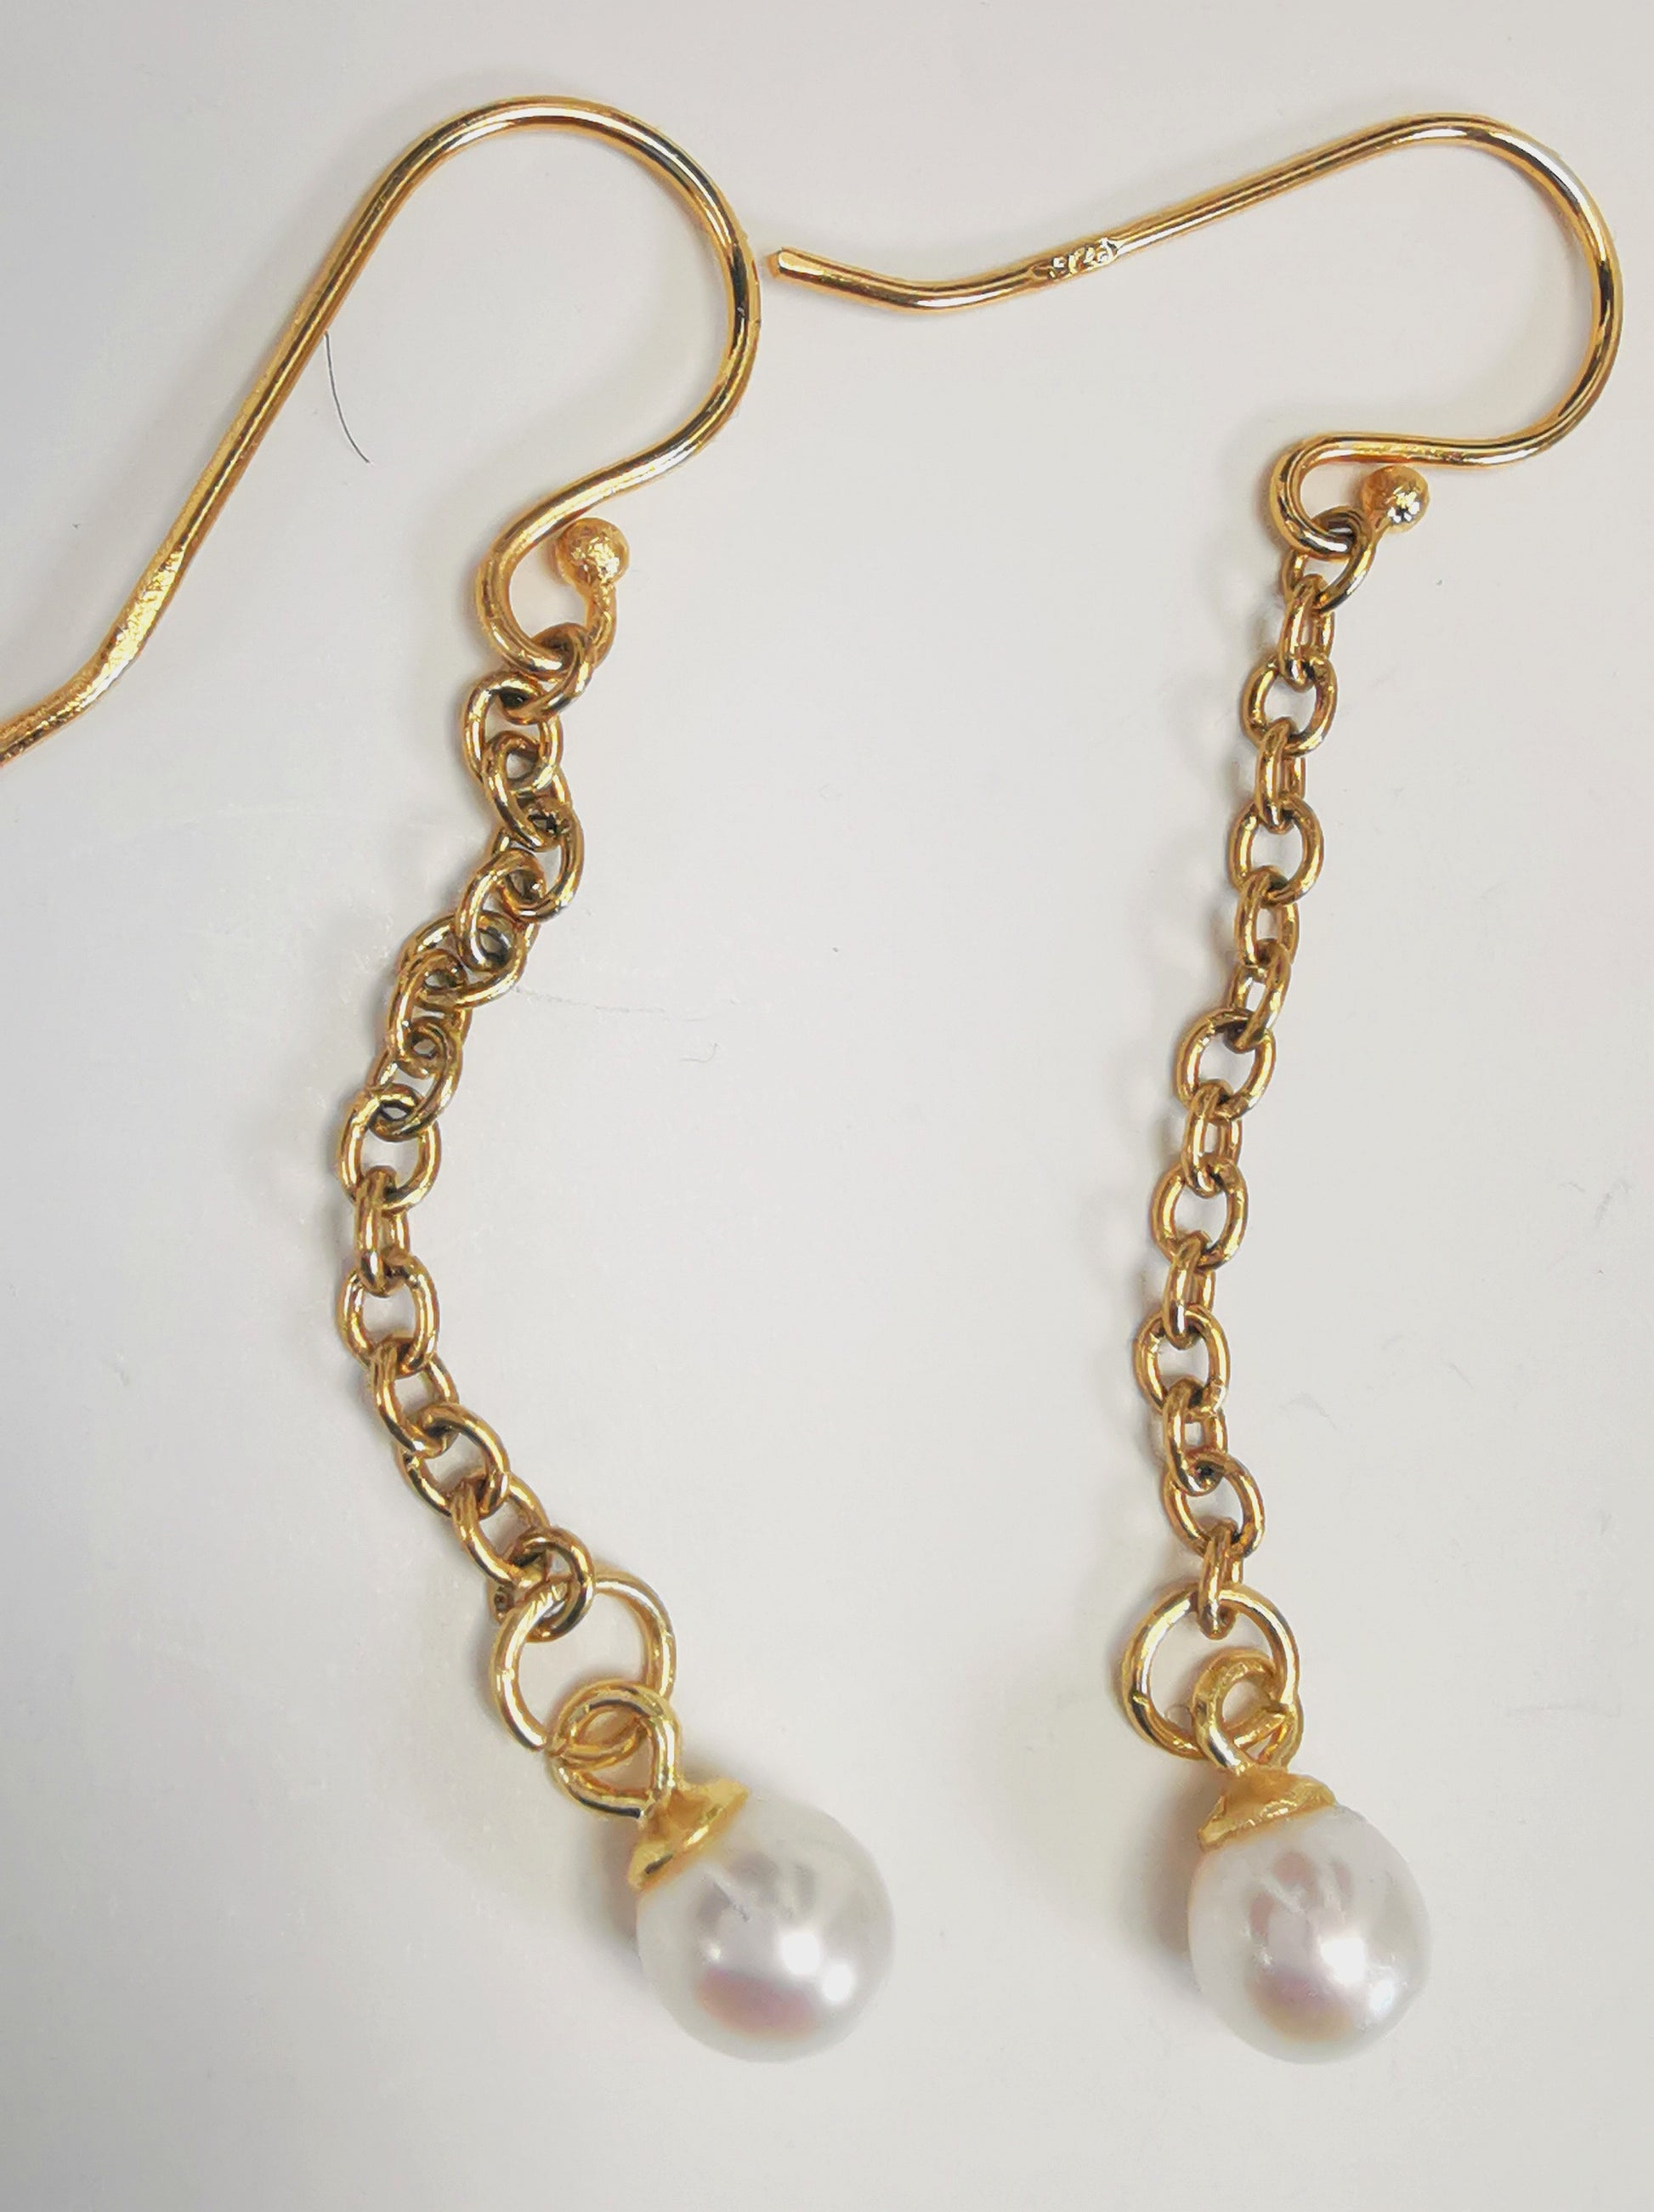 Boucles d'oreilles perles de culture blanches rondes 5mm sur pendants et chaînes plaqués or. Présentées cote à cote, boucle de gauche chaîne détendue, sur fond blanc. Vue de dessus.